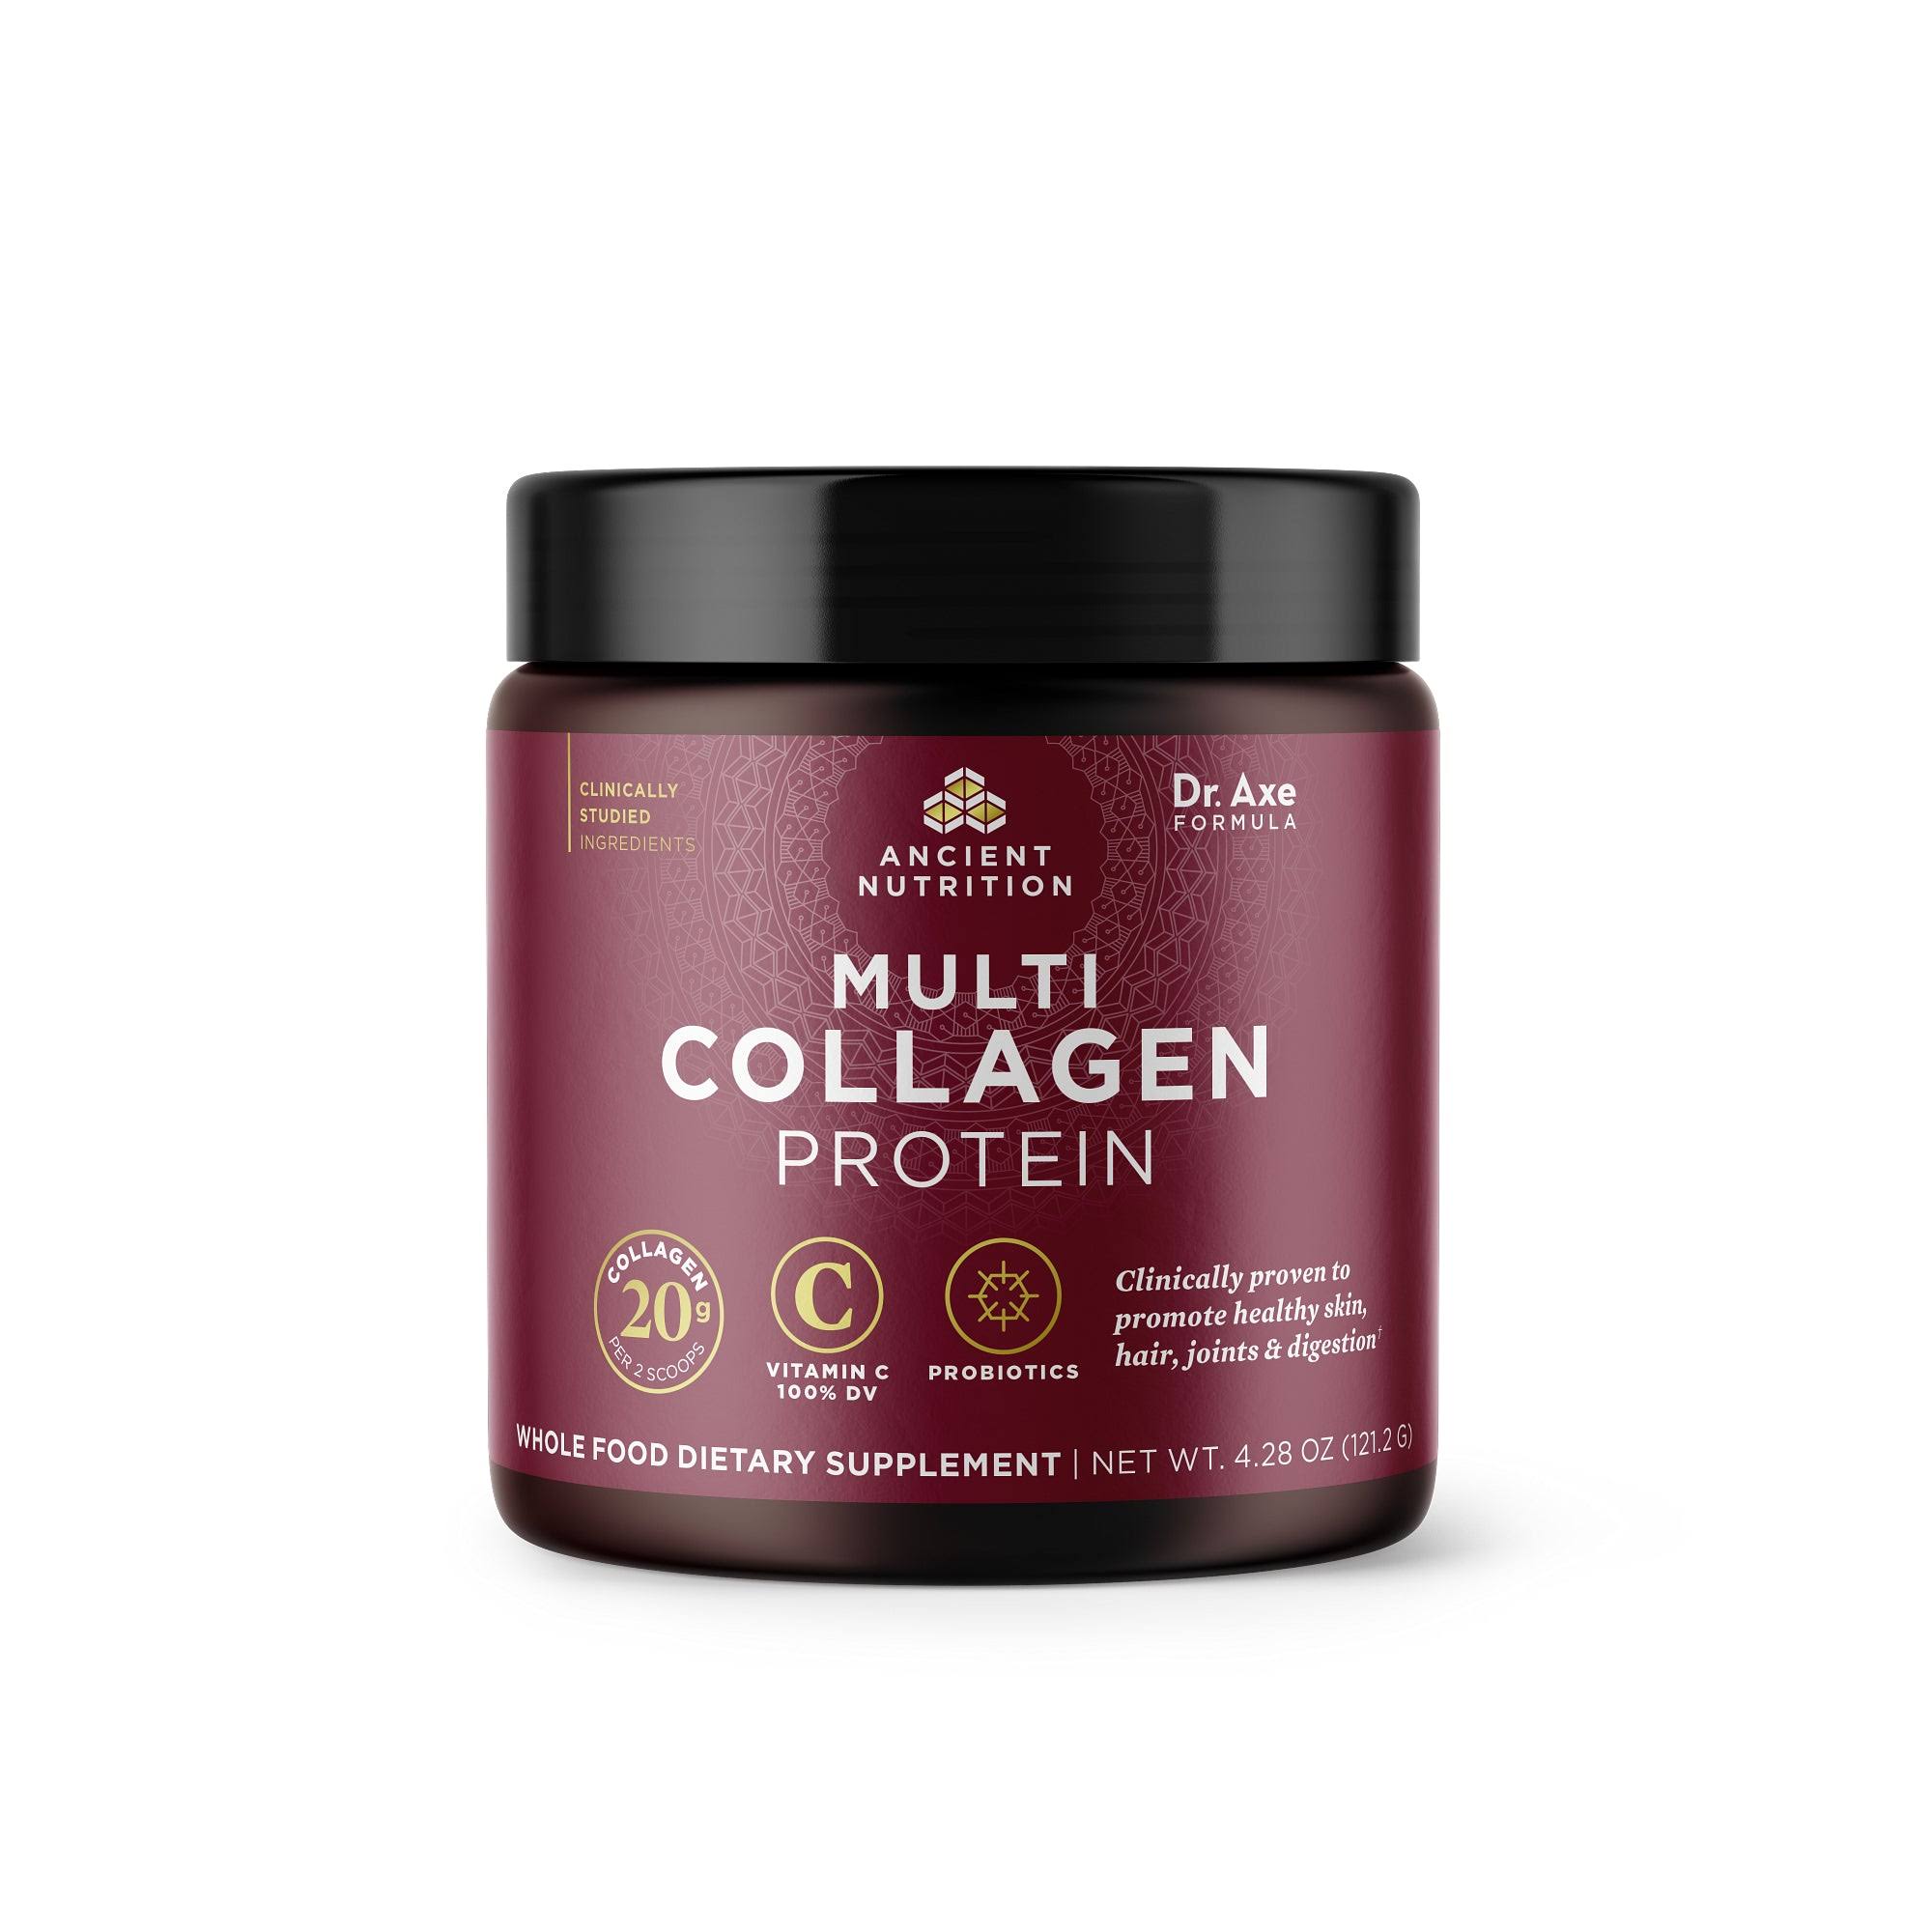 Ancient Nutrition Multi Collagen Protein Powder 12srv 121g Powder